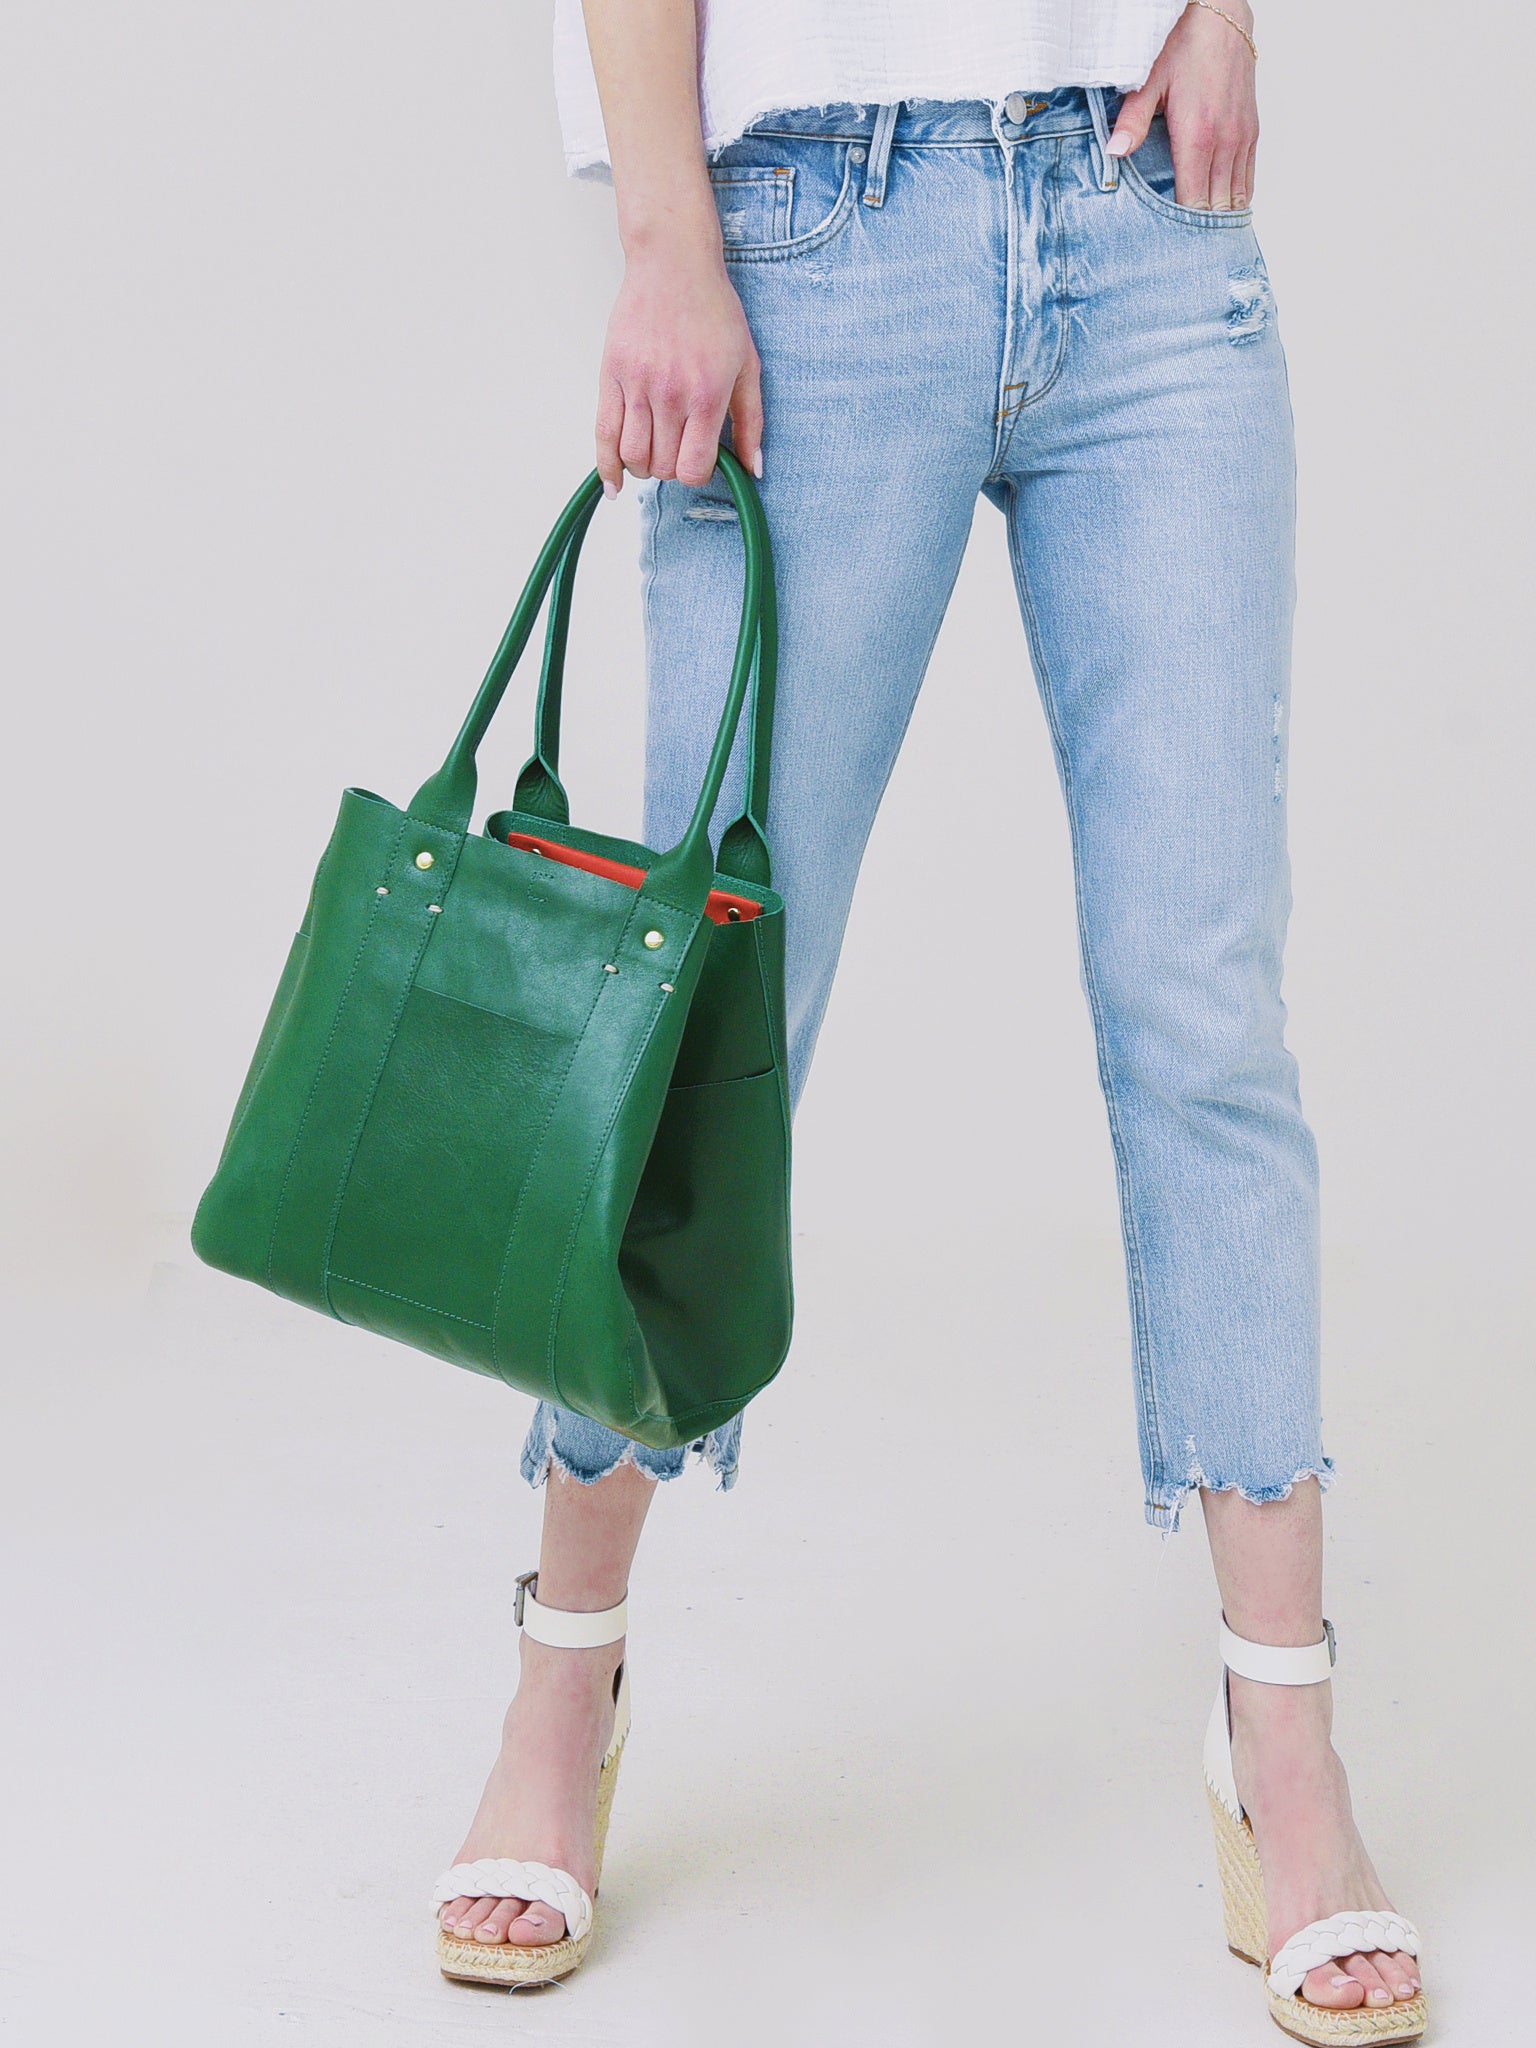 Clare V. / Le Box Leather Bag